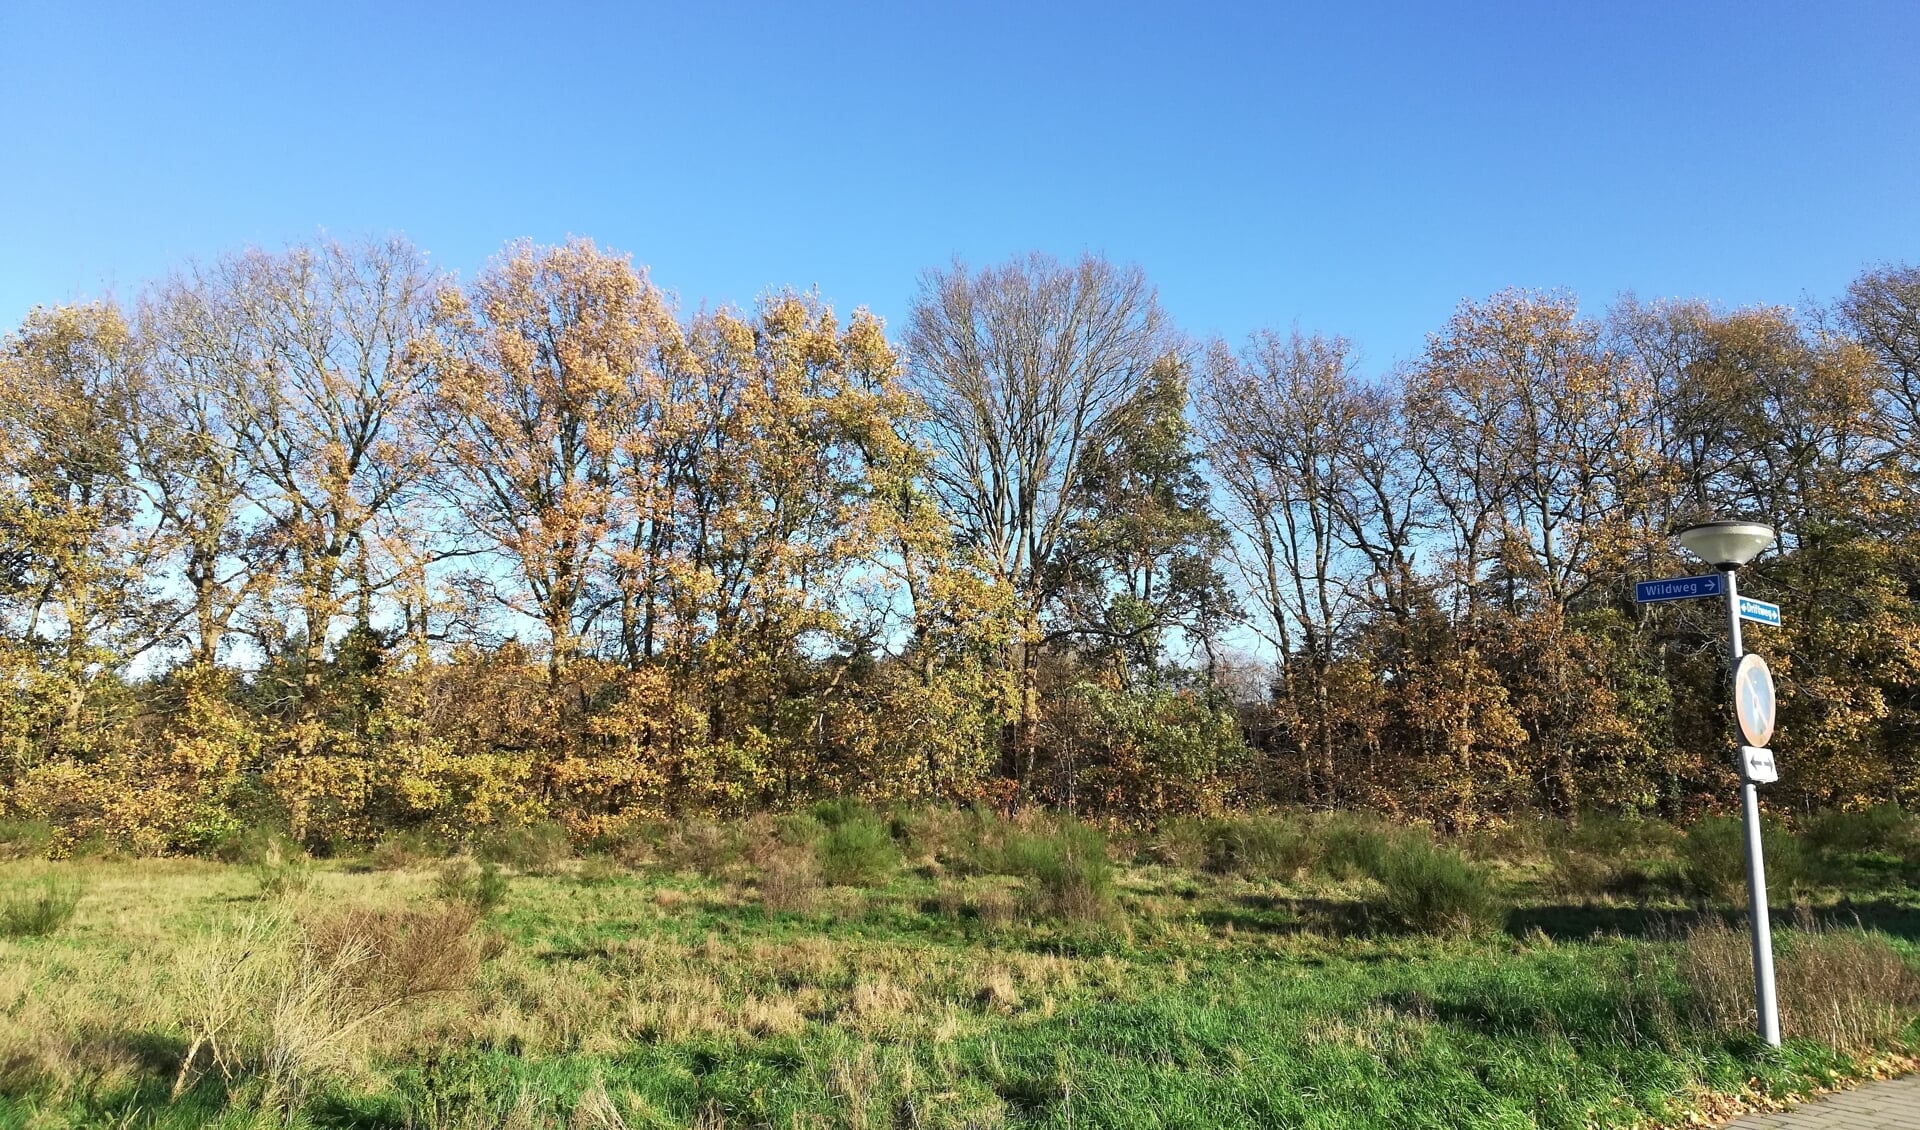 Ook de lagere woontoren zal door de omringende bomen heen te zien zijn, zeker in de winterperiode wanneer er minder blad is, geeft Stichting Naarder Eng aan. 